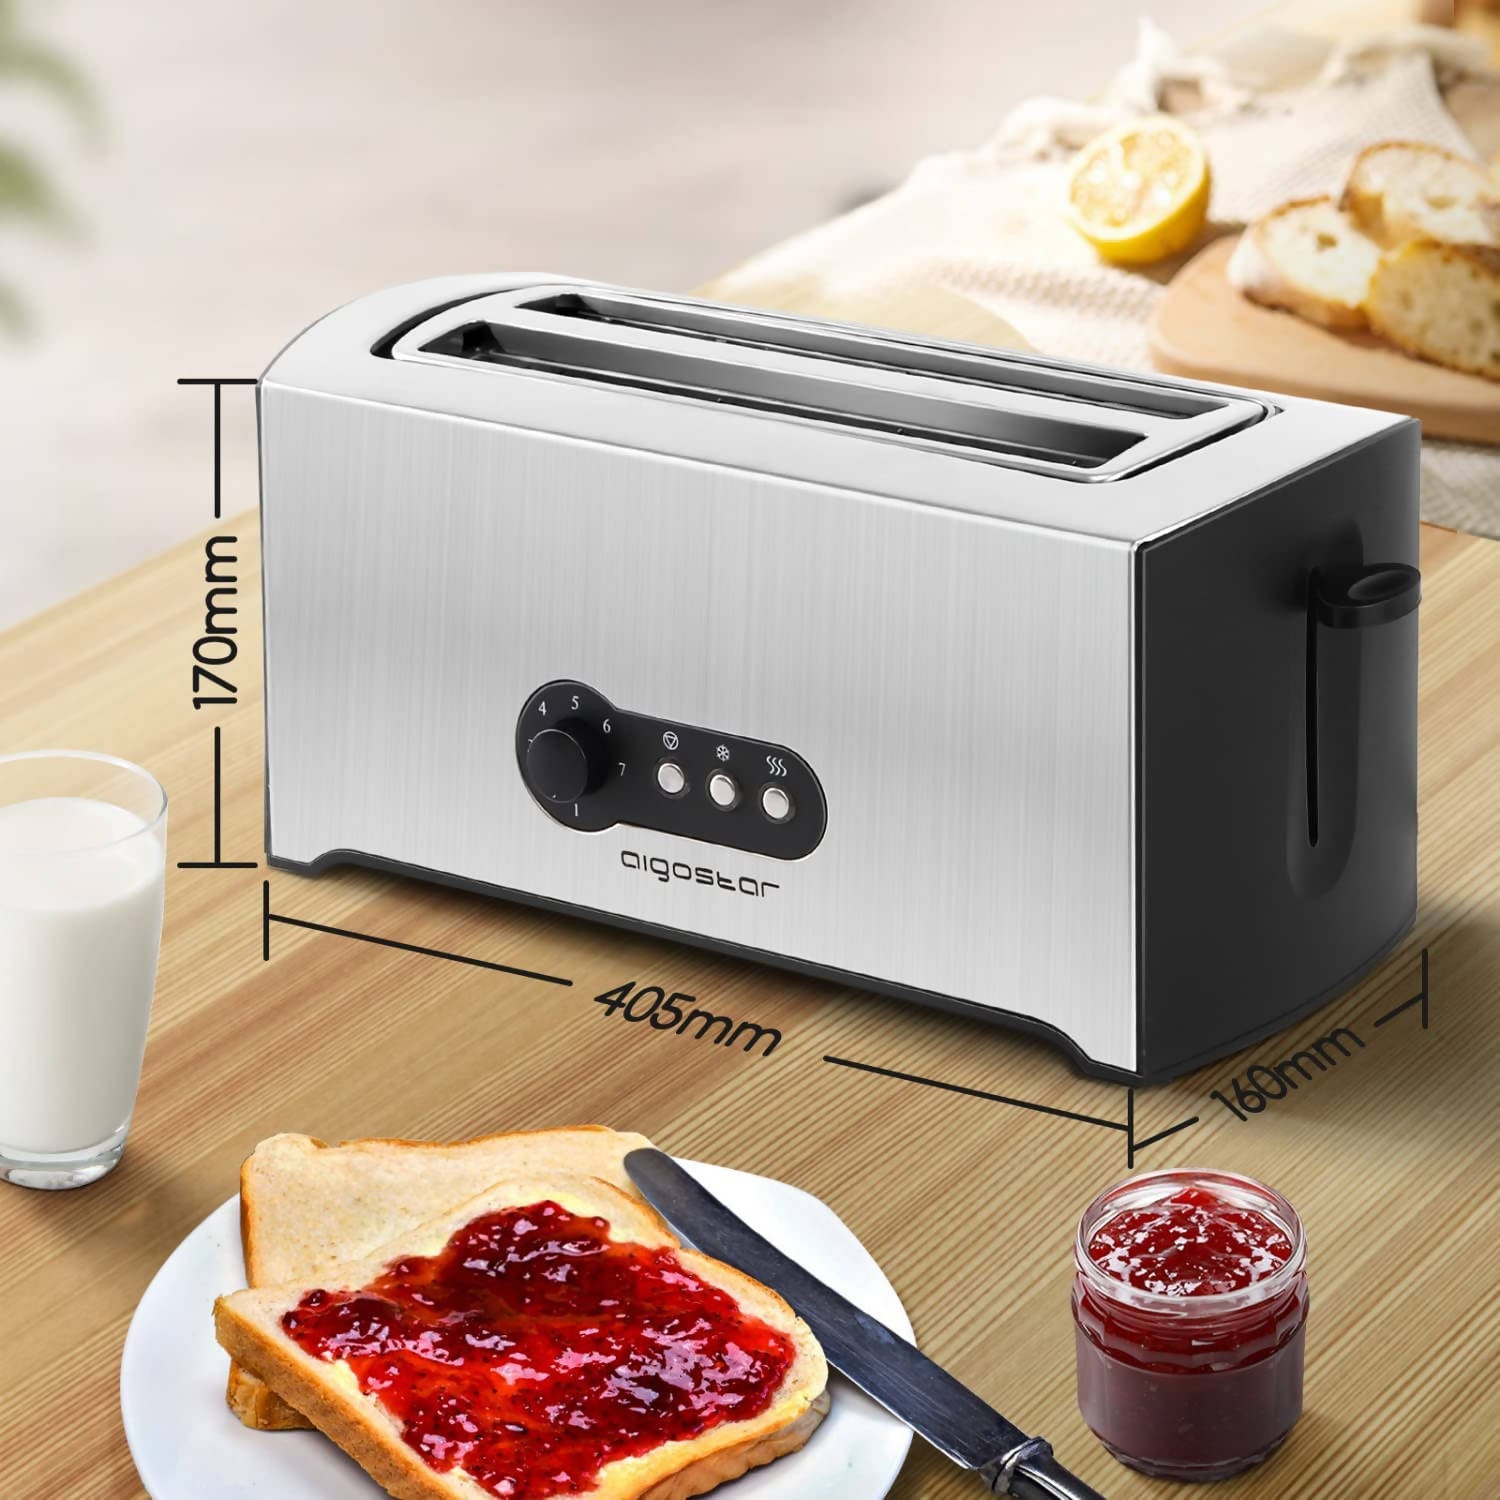 Aigostar Sunshine 30KDG - Edelstahl Toaster Mit Abnehmbarer Krümelschublade (1600 Watt, 4 Brotscheiben, 7 Bräunungsstufen und 3 Kochfunktionen) Farbe Silber & Schwarz, BPA Free